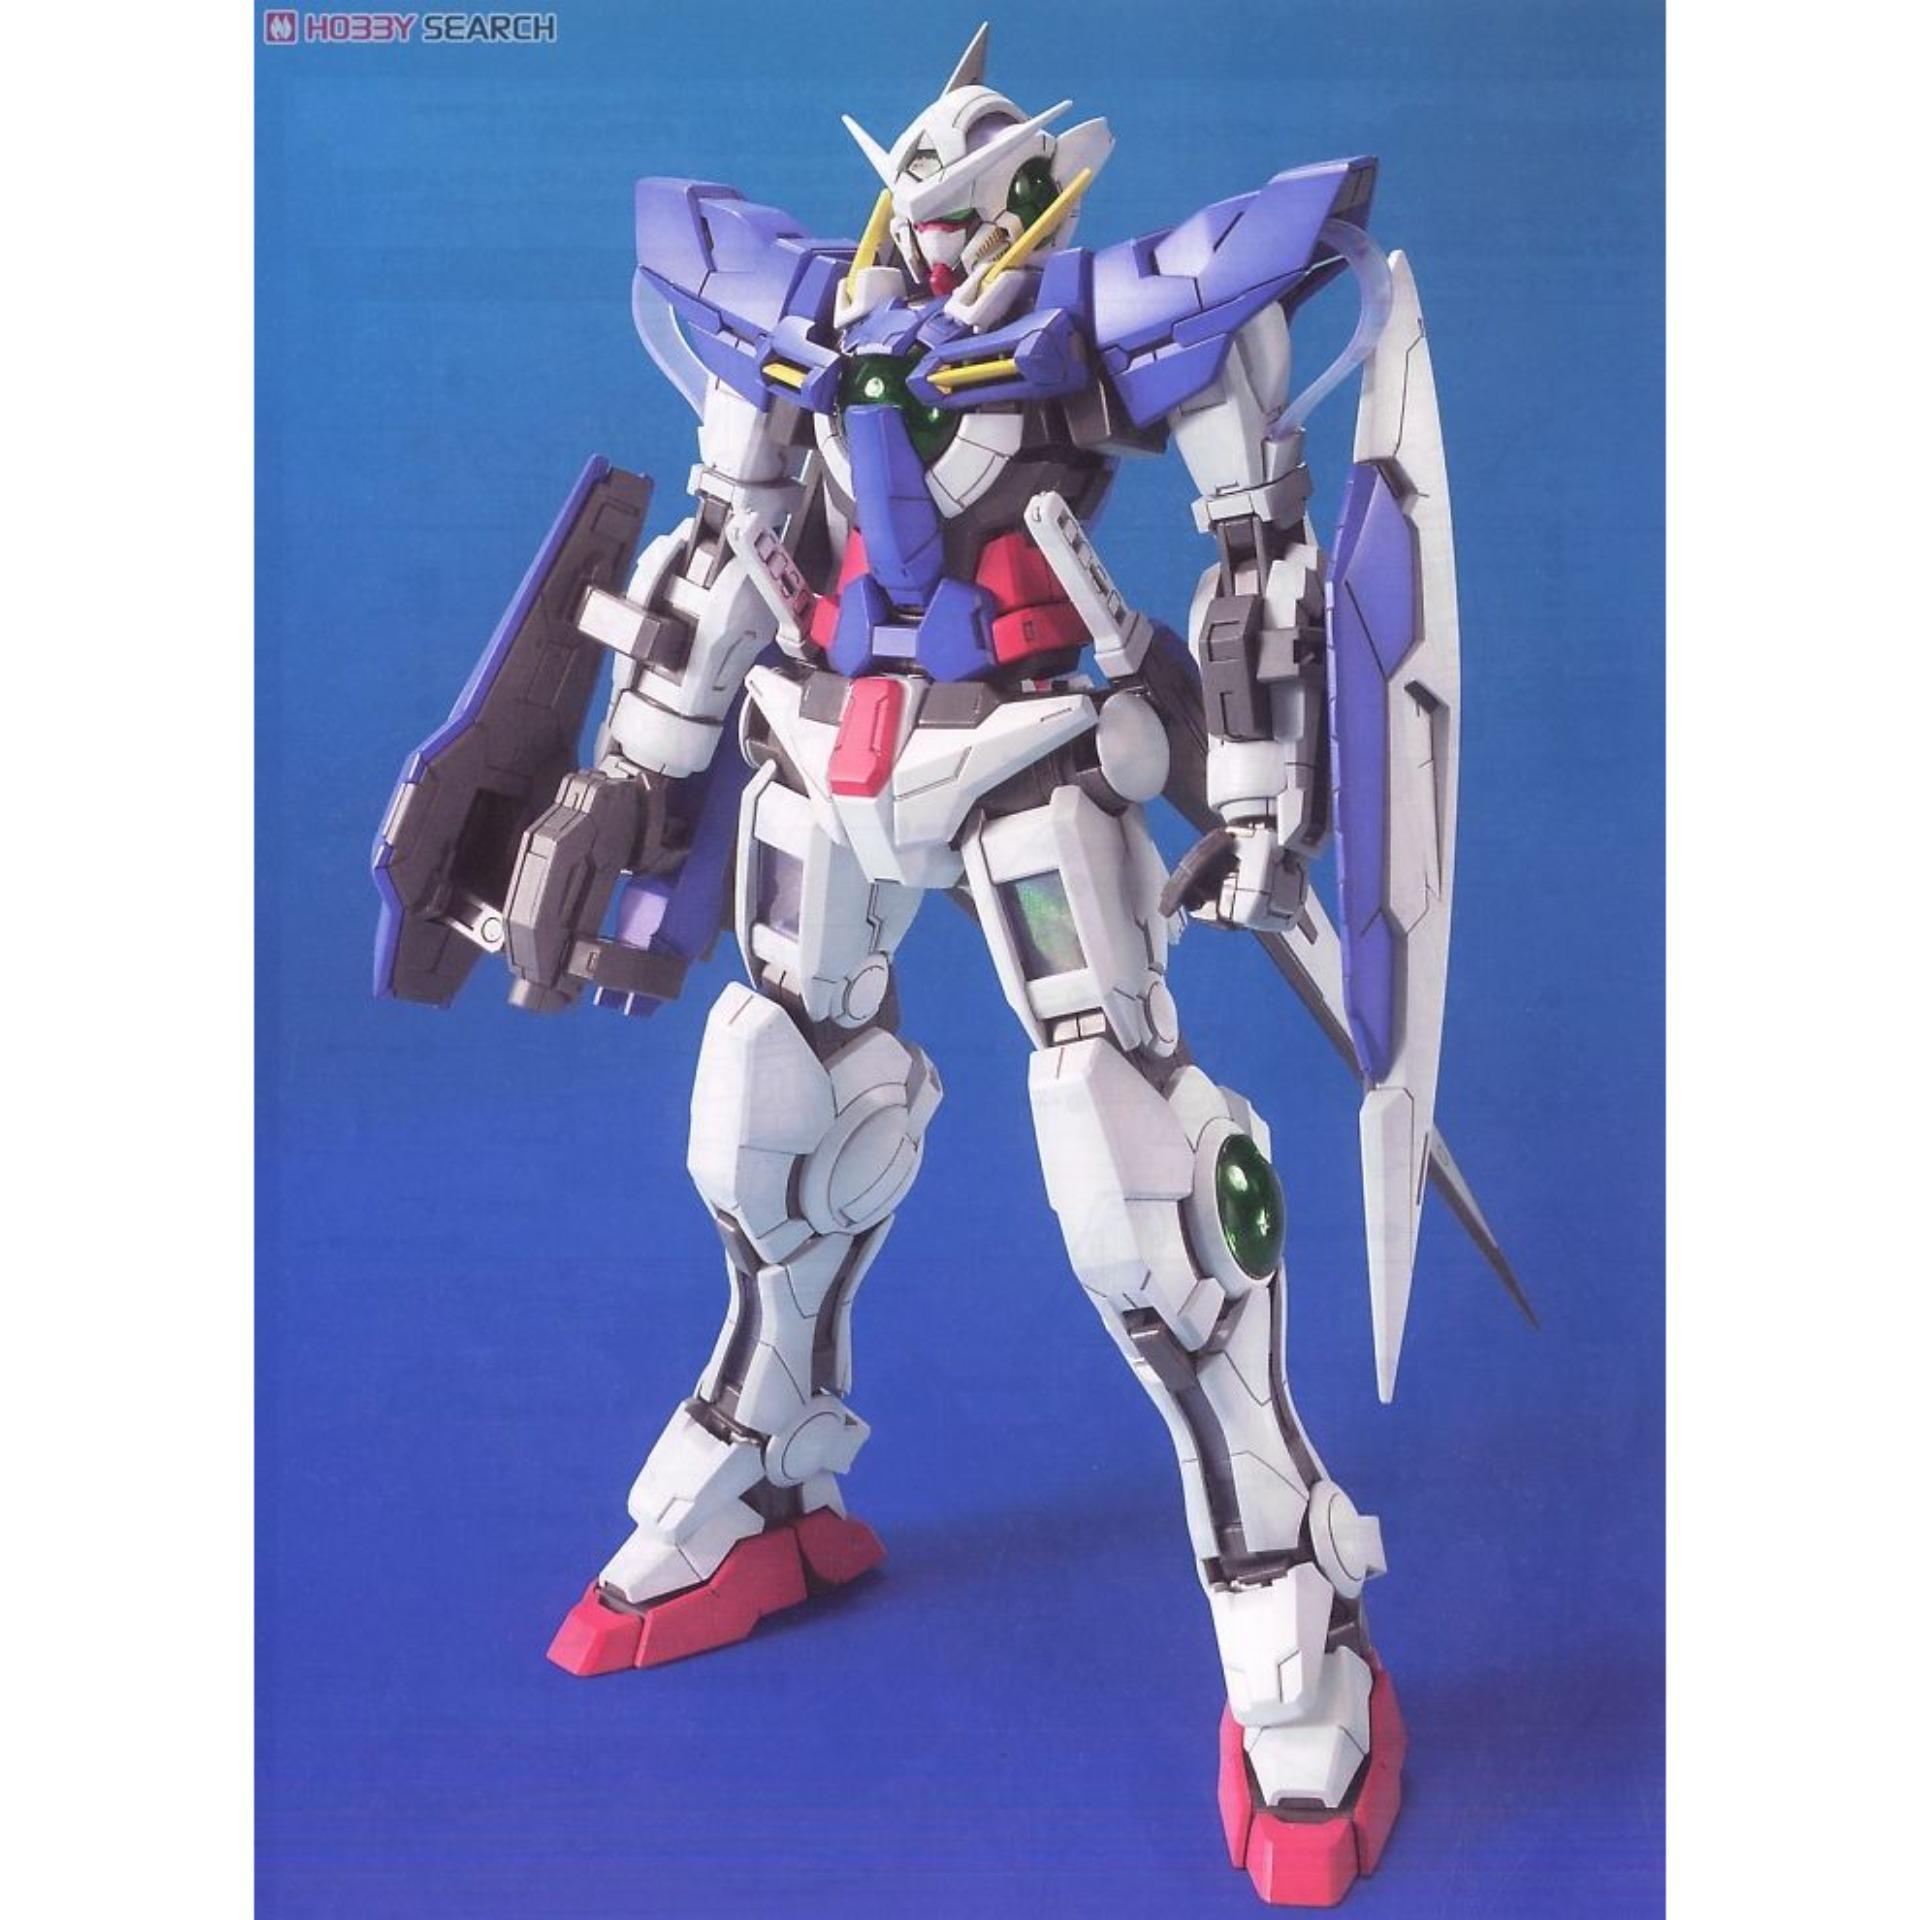 Mô hình Gundam Bandai 1/100 MG GN-001 Gundam Exia Serie MG Gundam 00